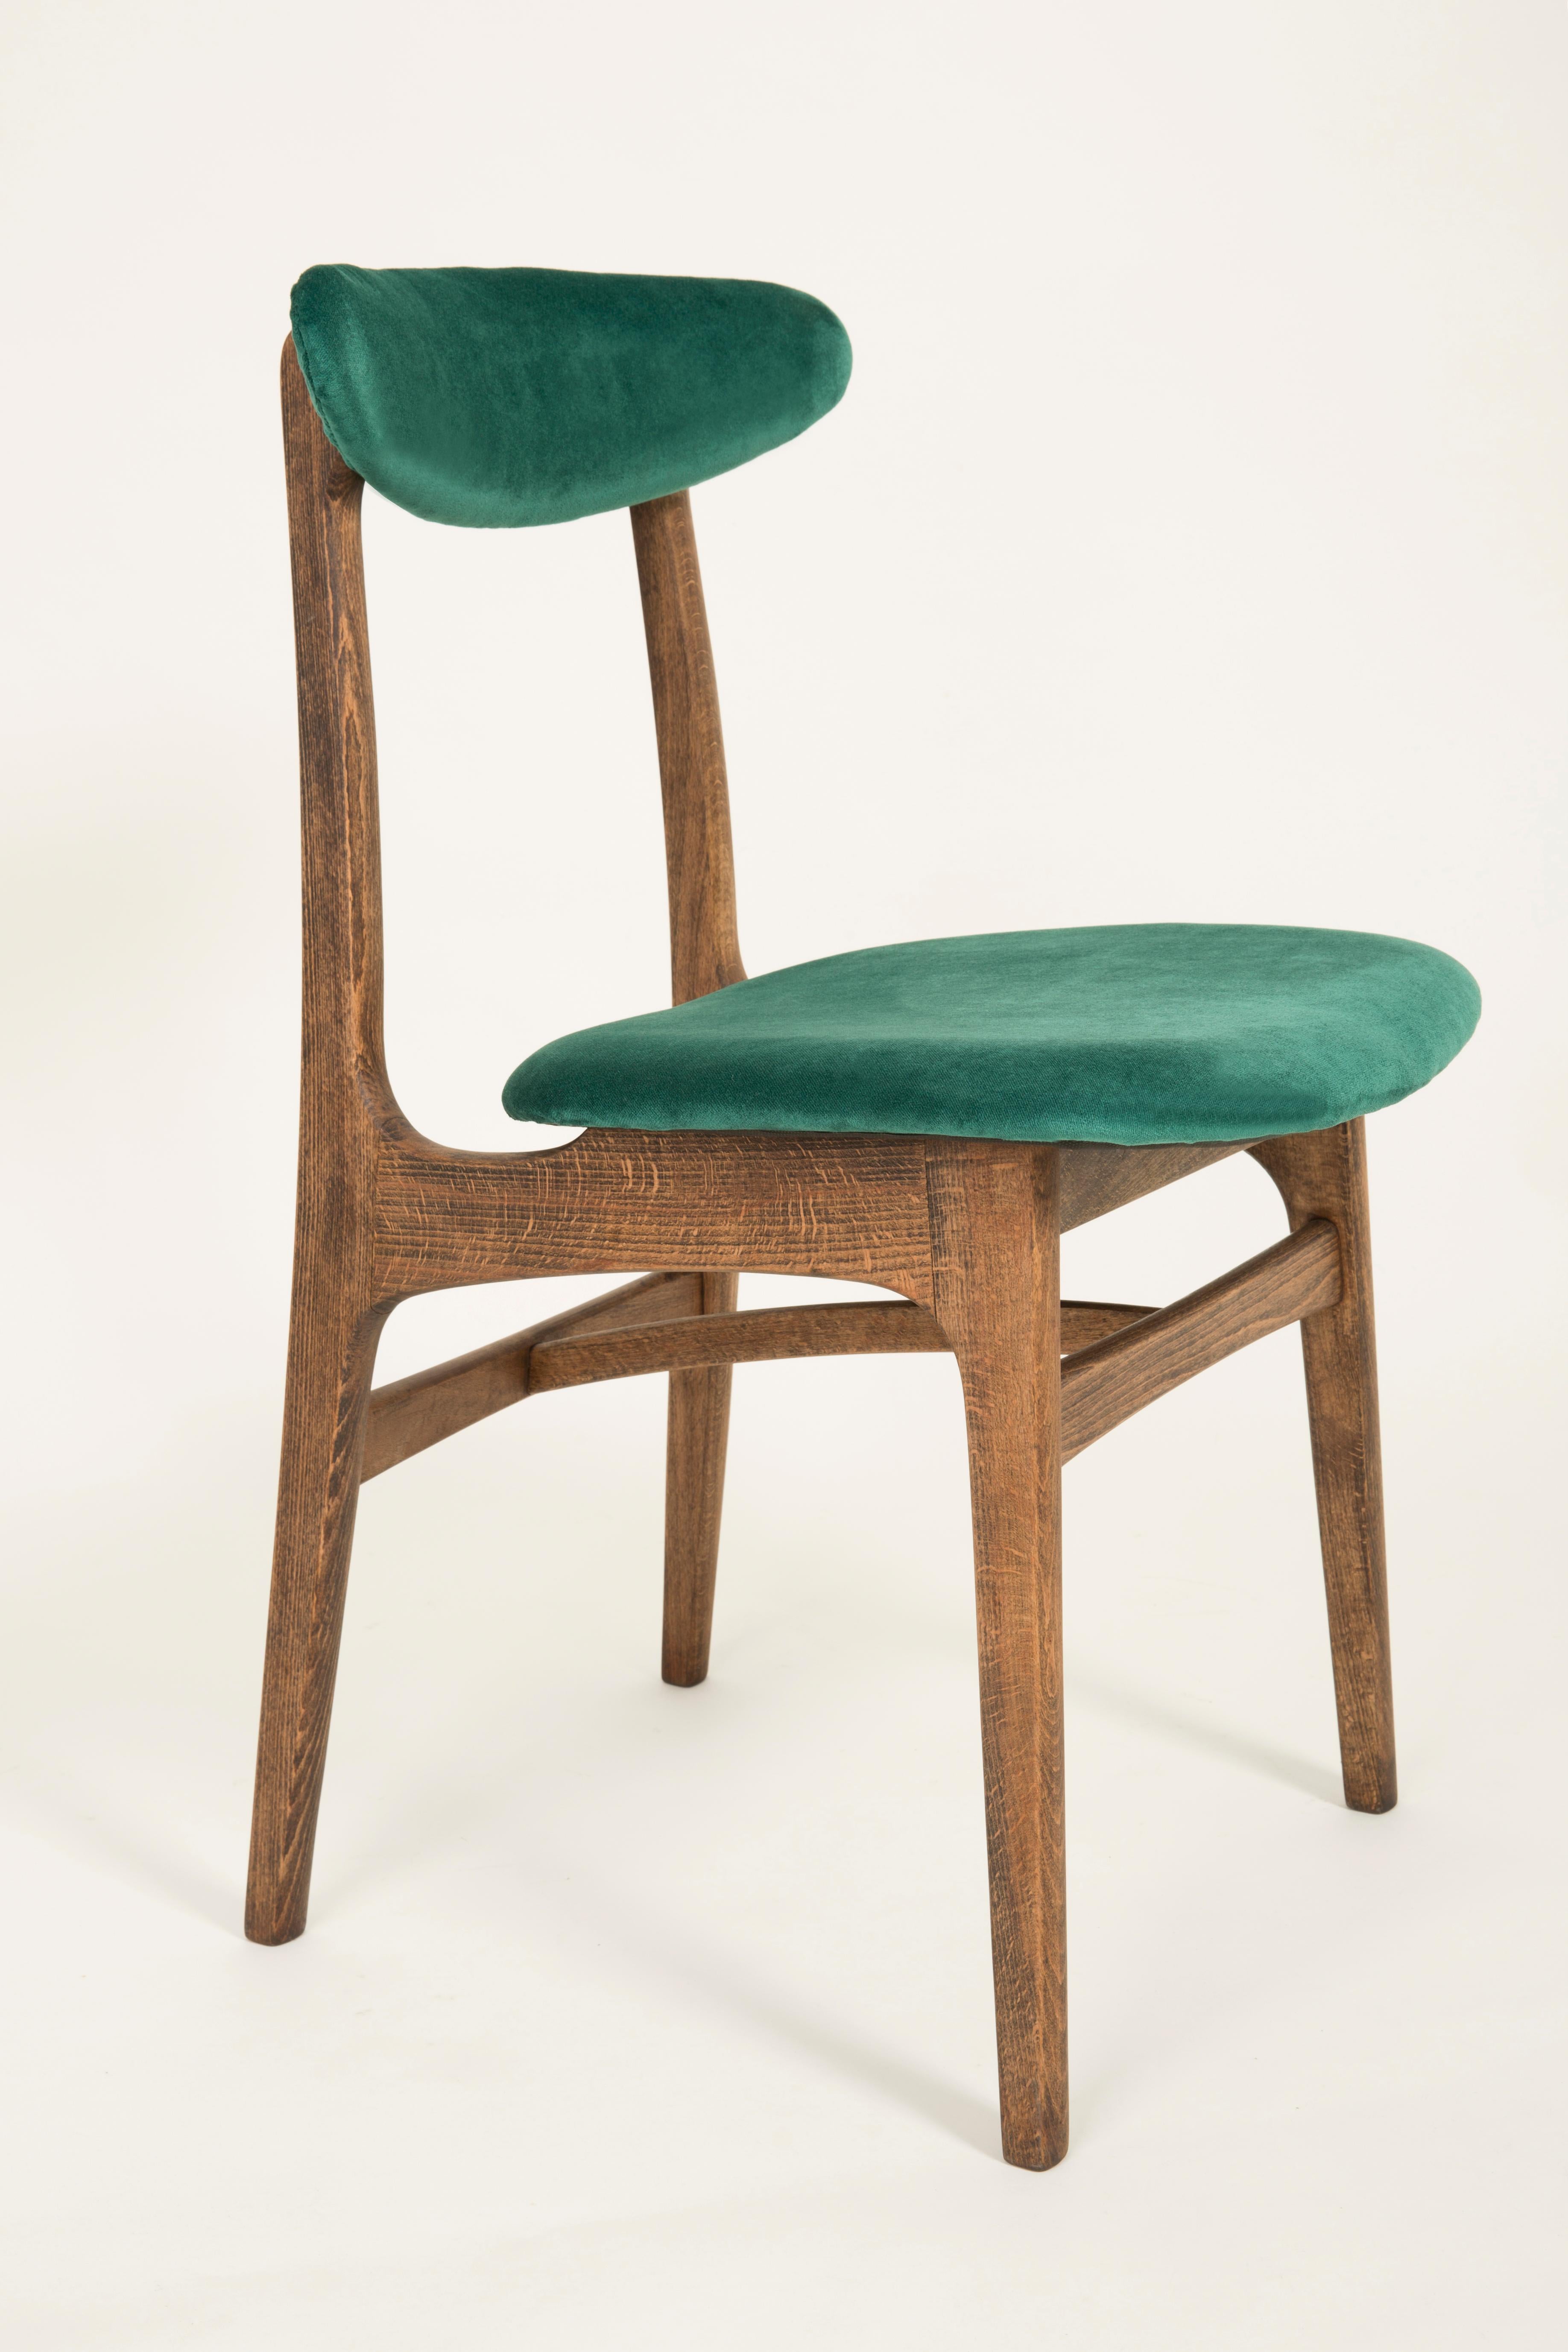 Chaises conçues par le prof. Rajmund Halas. Ils ont été fabriqués en bois de hêtre. Ils ont subi une rénovation complète de la sellerie, les boiseries ont été rafraîchies. Les sièges et les dossiers étaient habillés d'un tissu en velours vert foncé,